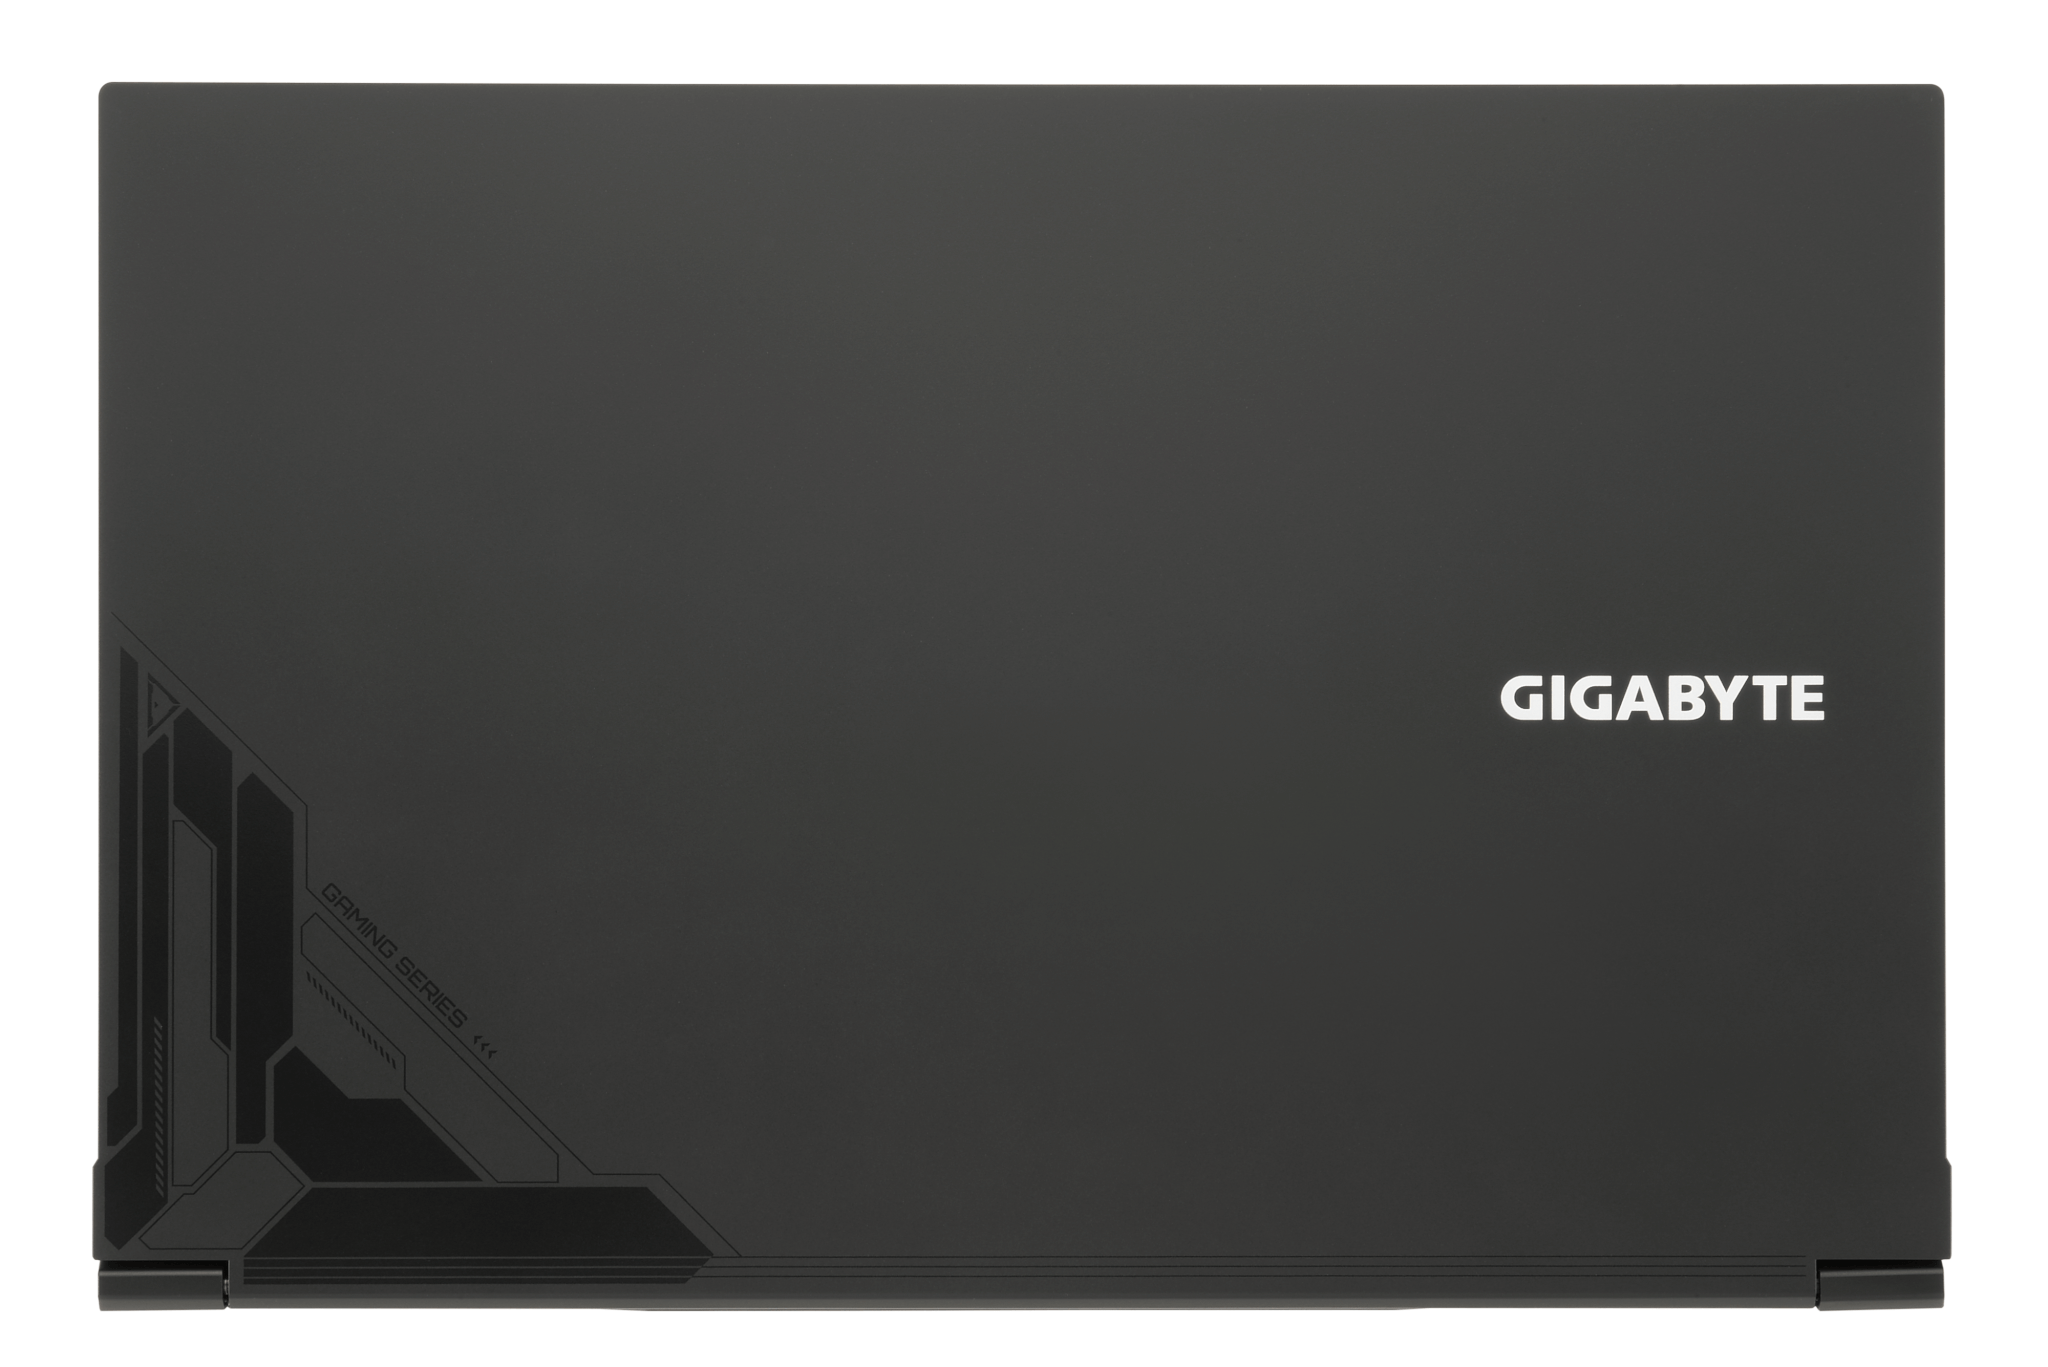 GIGABYTE G5 KE-52JP213SH | ゲーミングノートパソコン | Direct